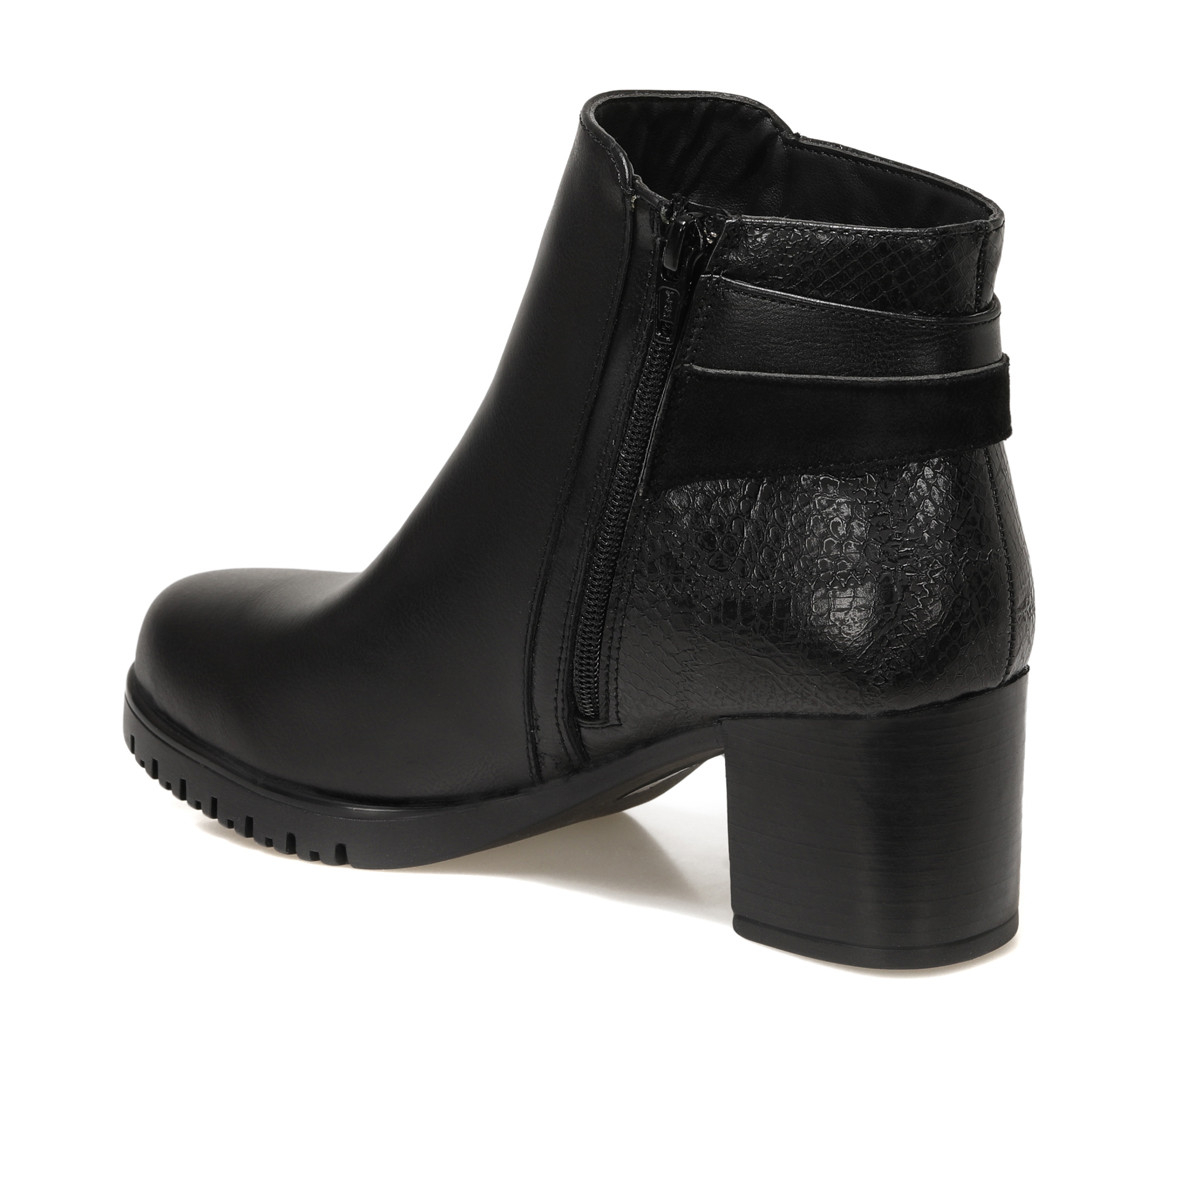 Flo TRV1775 Siyah Kadın Topuklu Ayakkabı. 1